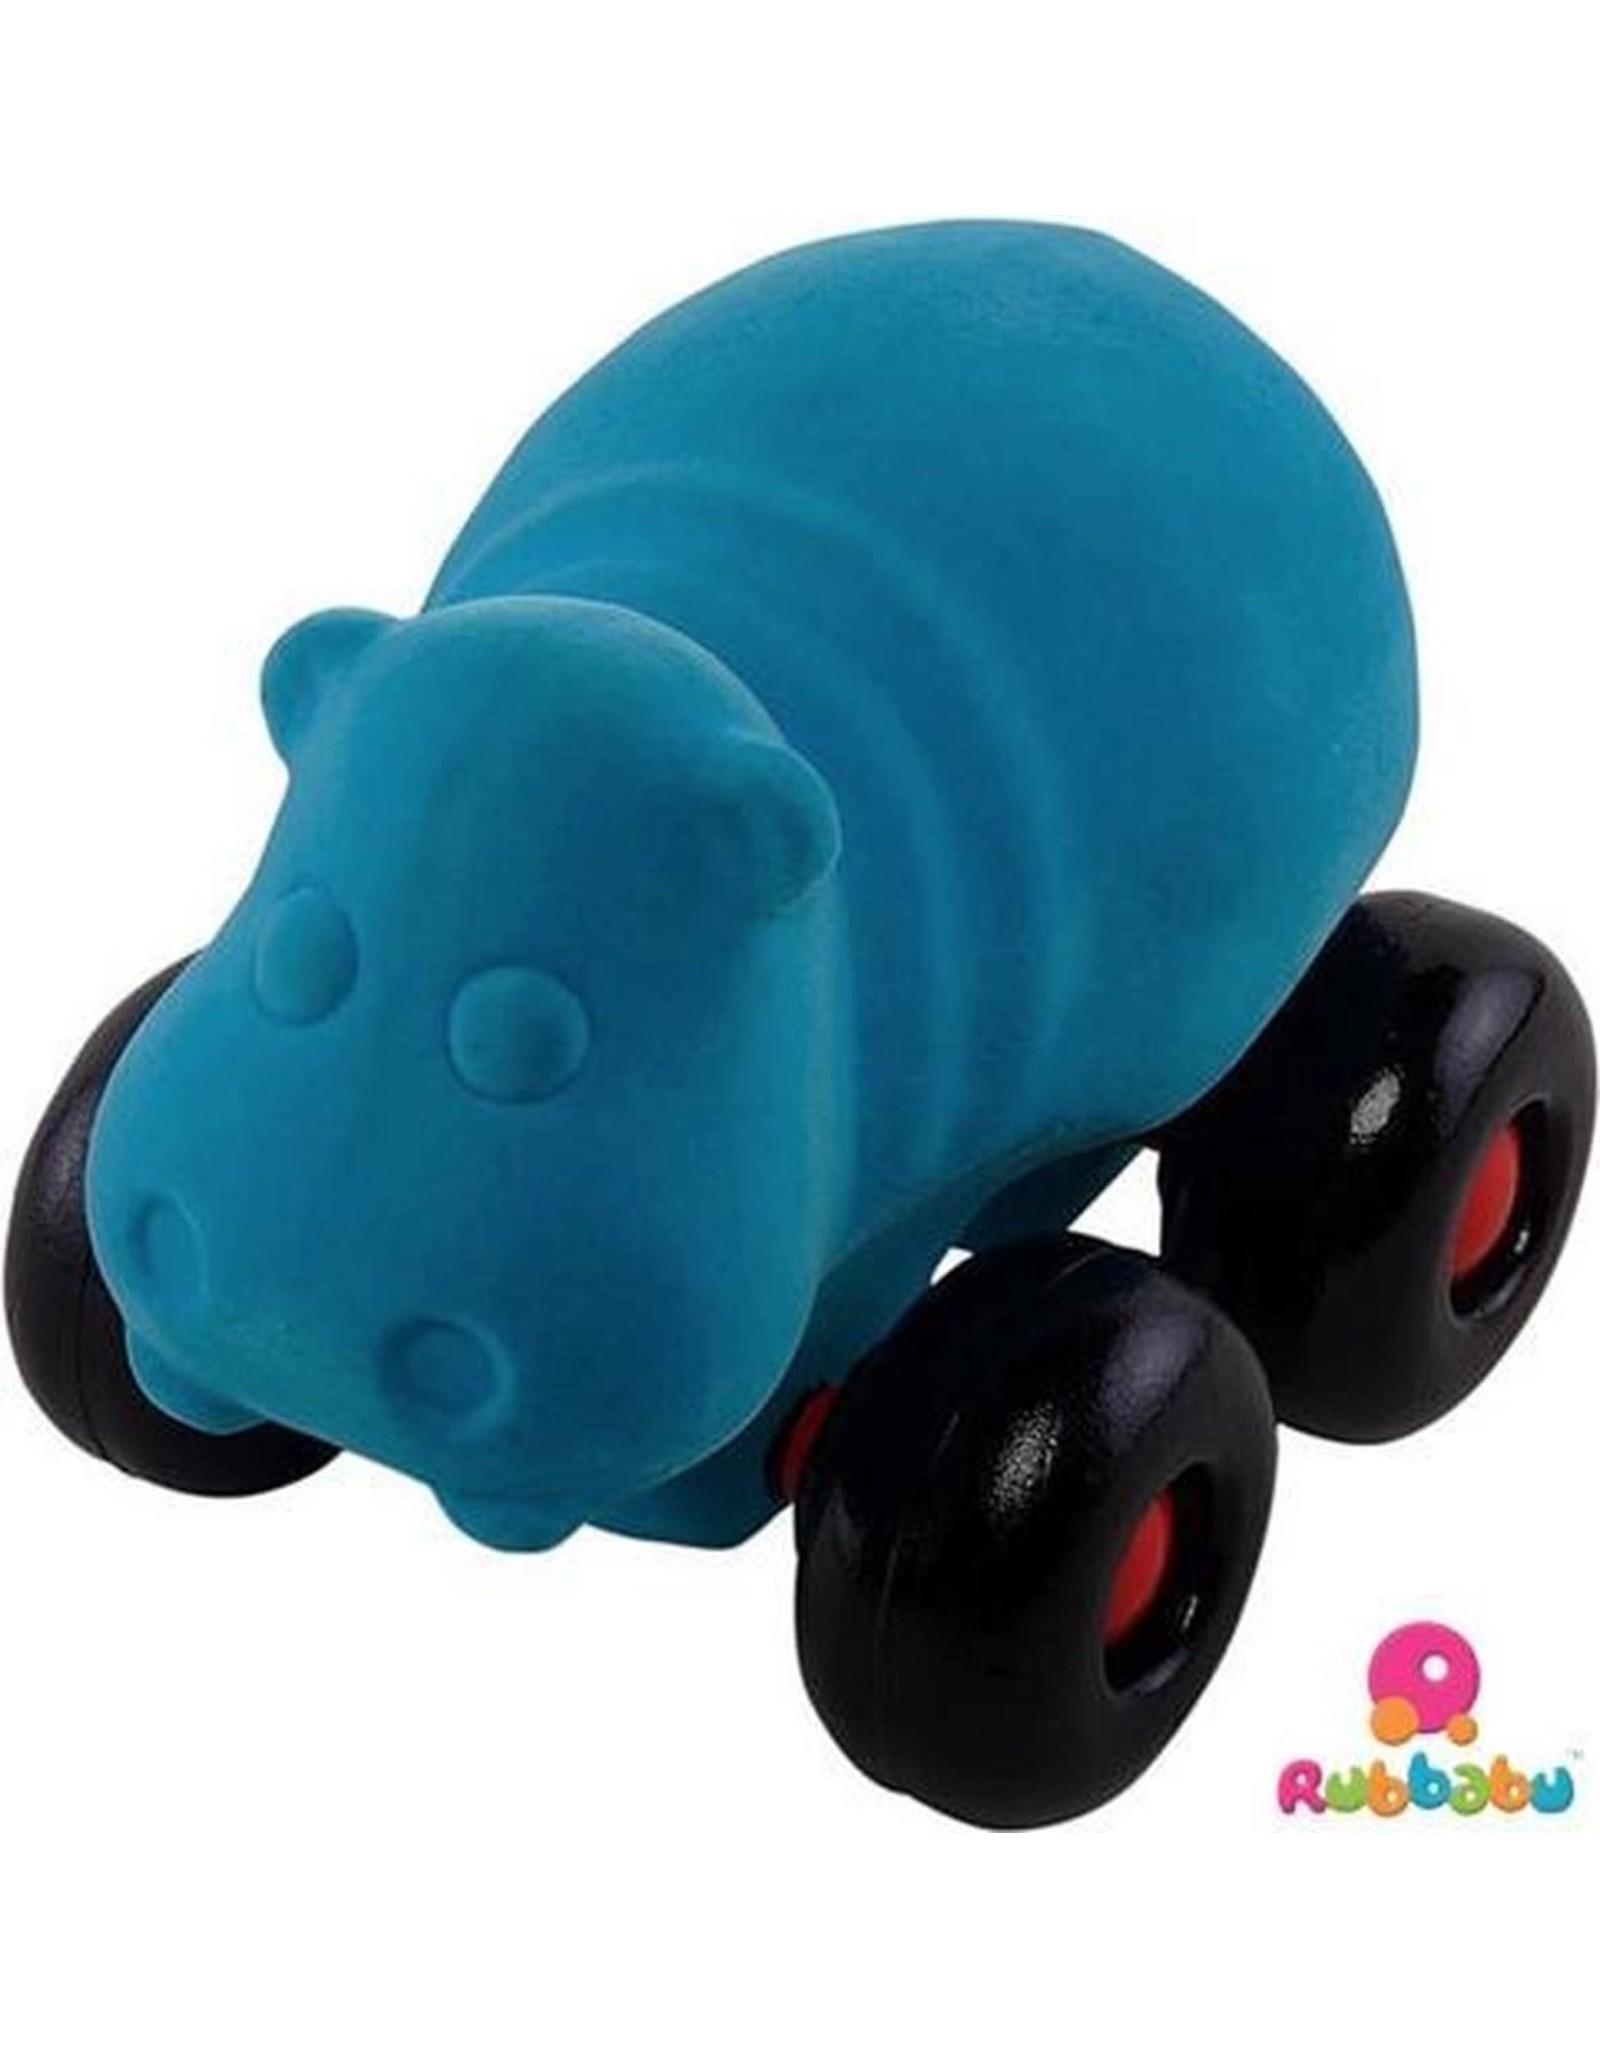 Rubbabu Rubbabu Aniwheelies Blauw Nijlpaard op wielen 0+